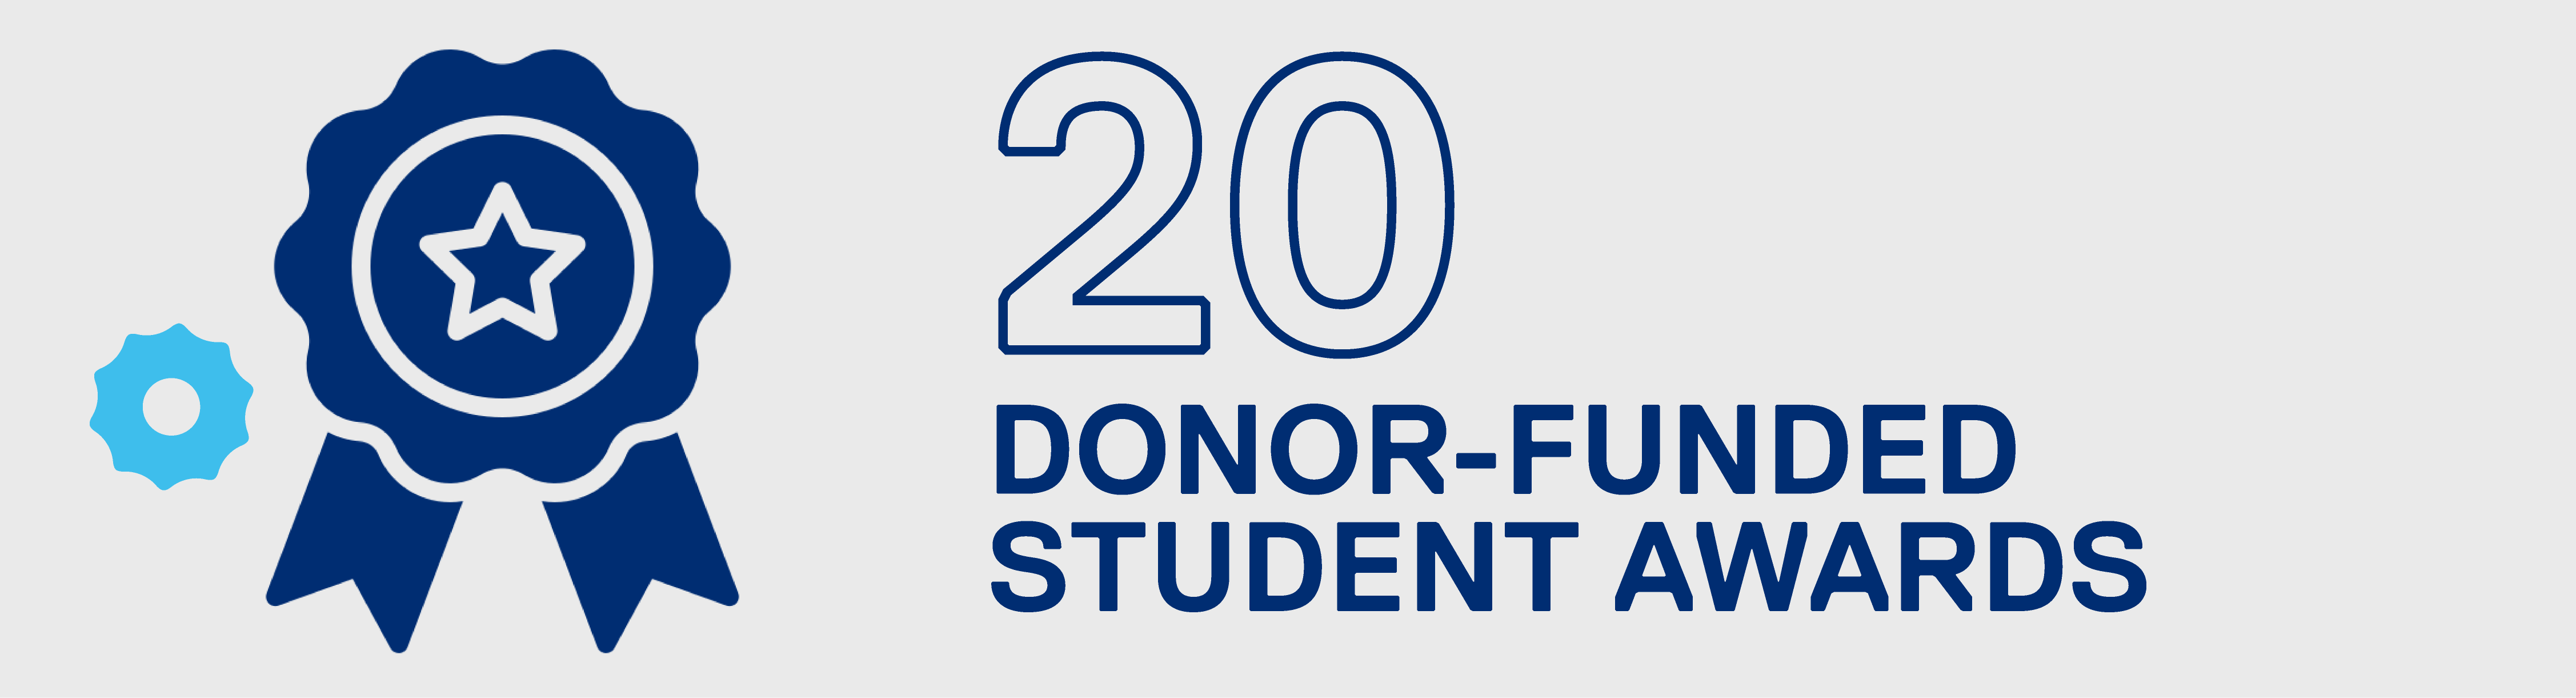 Twenty donor-funded student awards